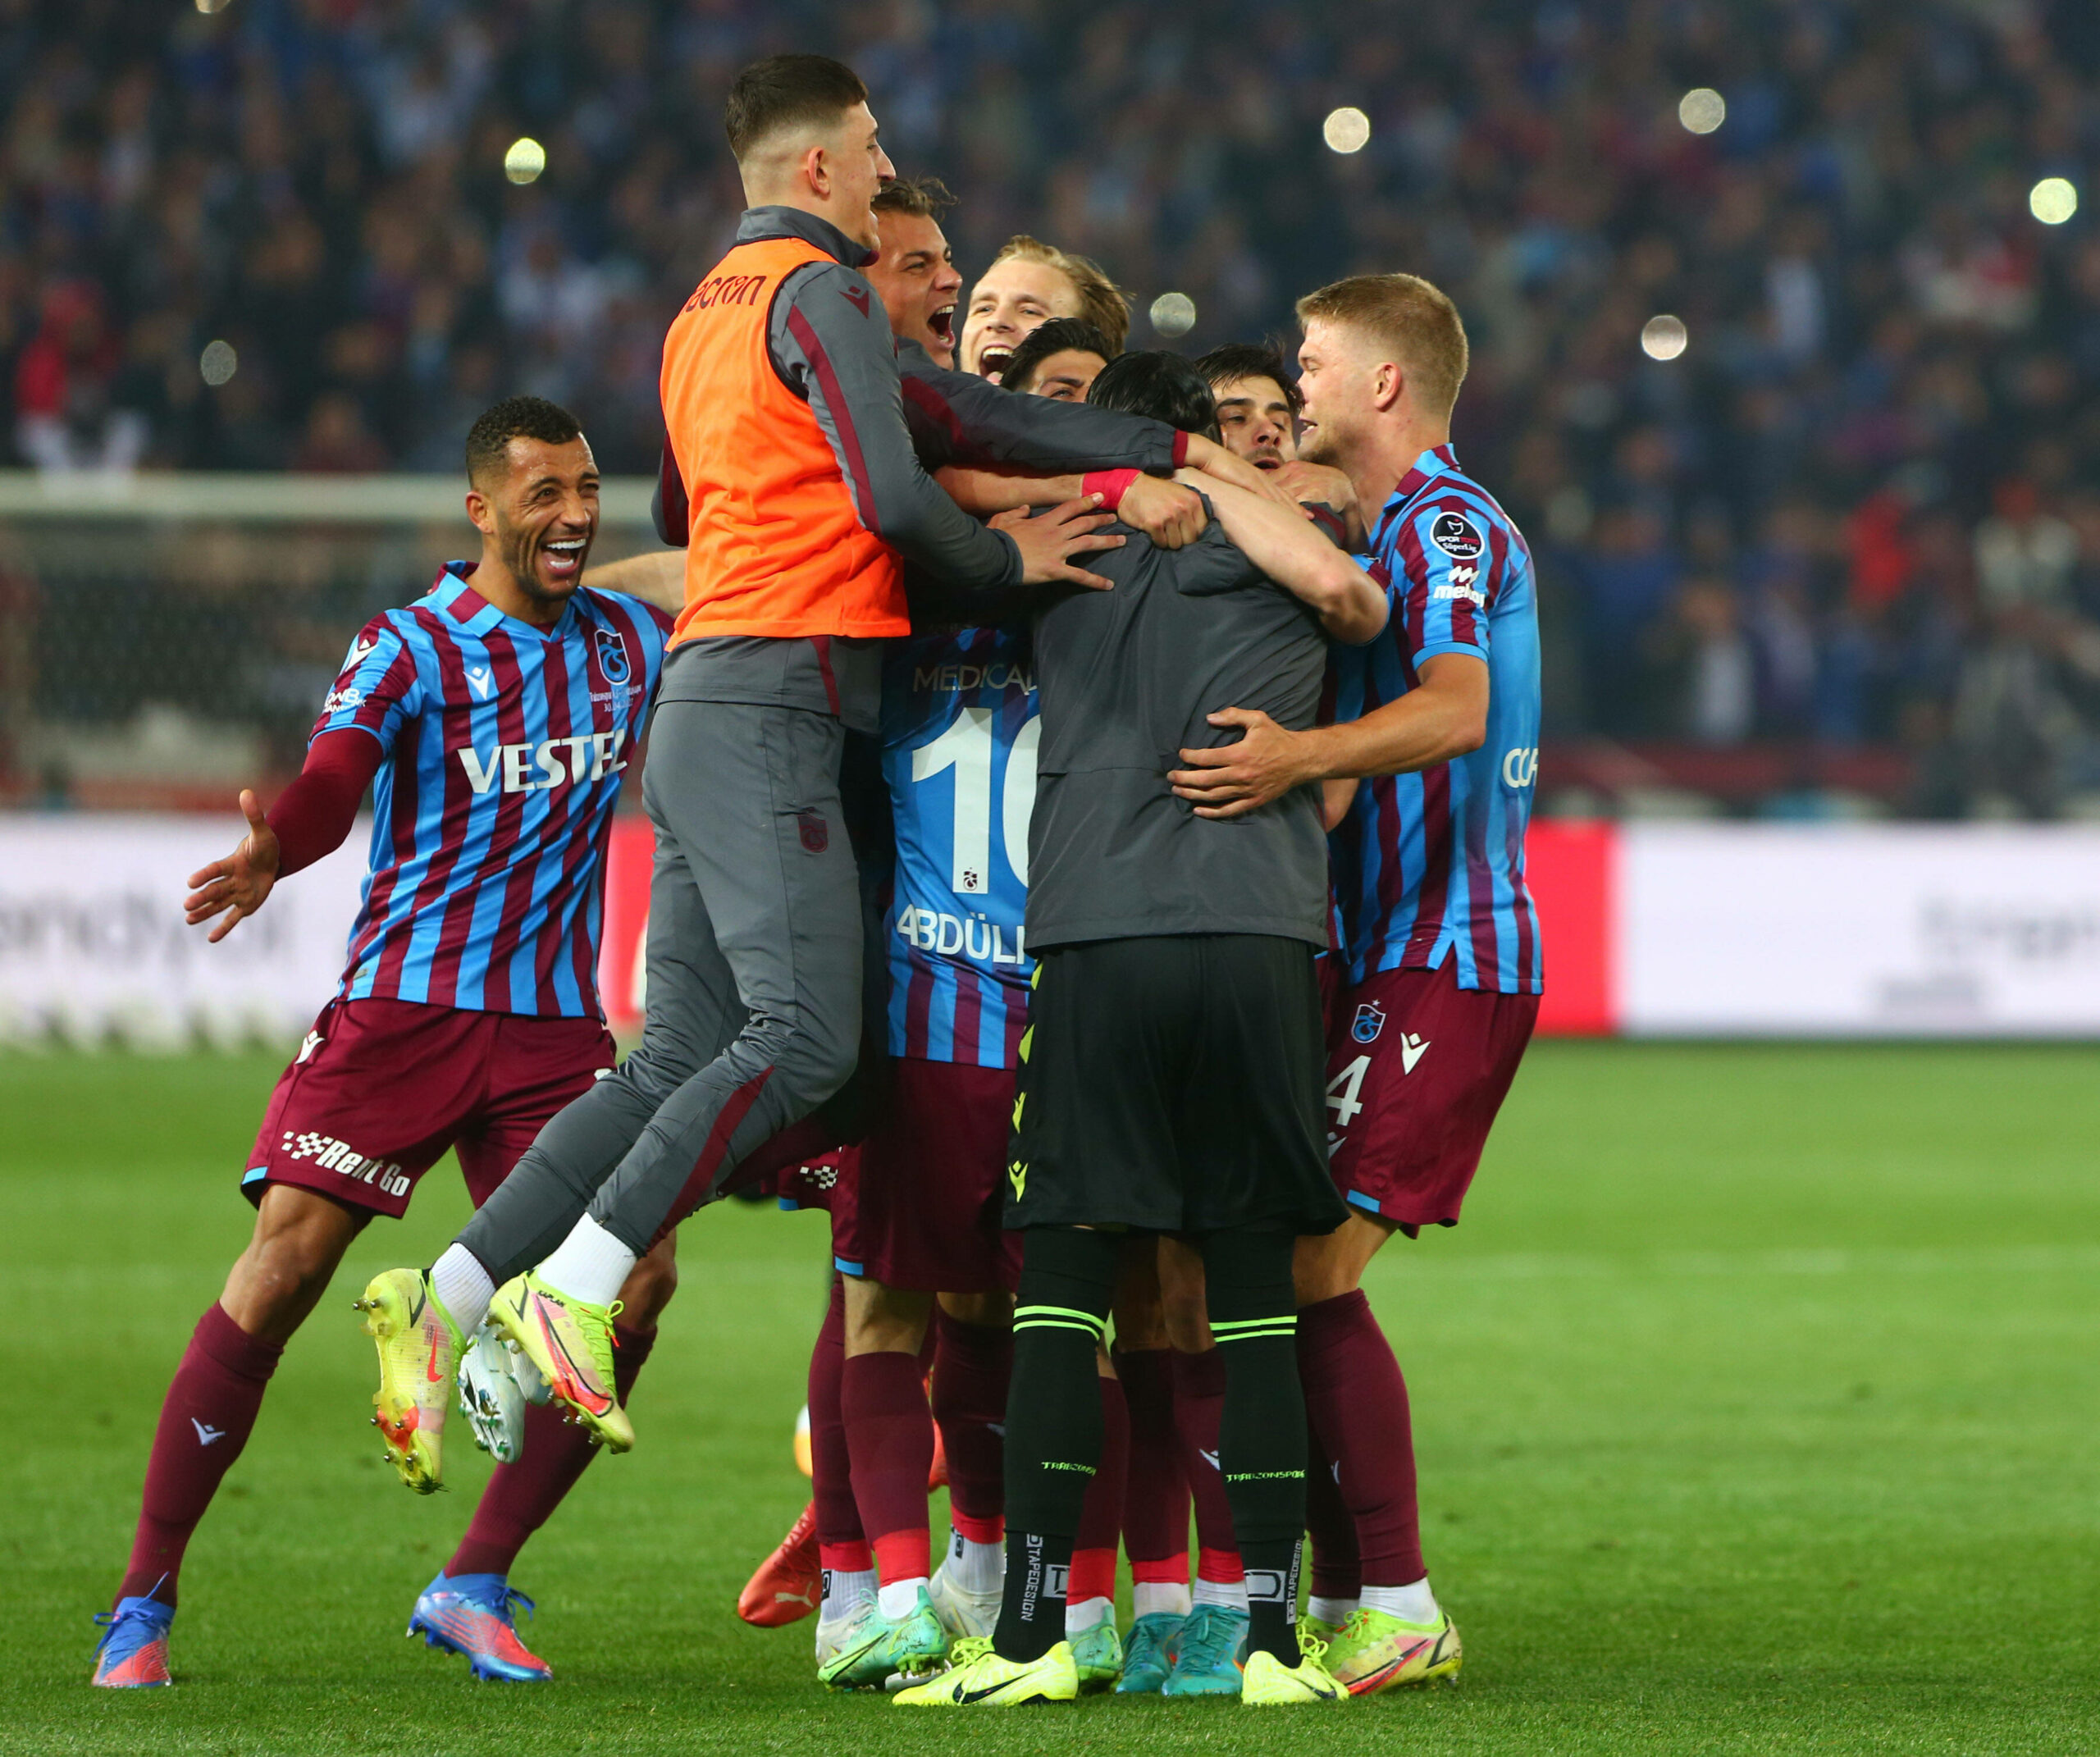 Die Spieler von Trabzonspor beim Jubeln